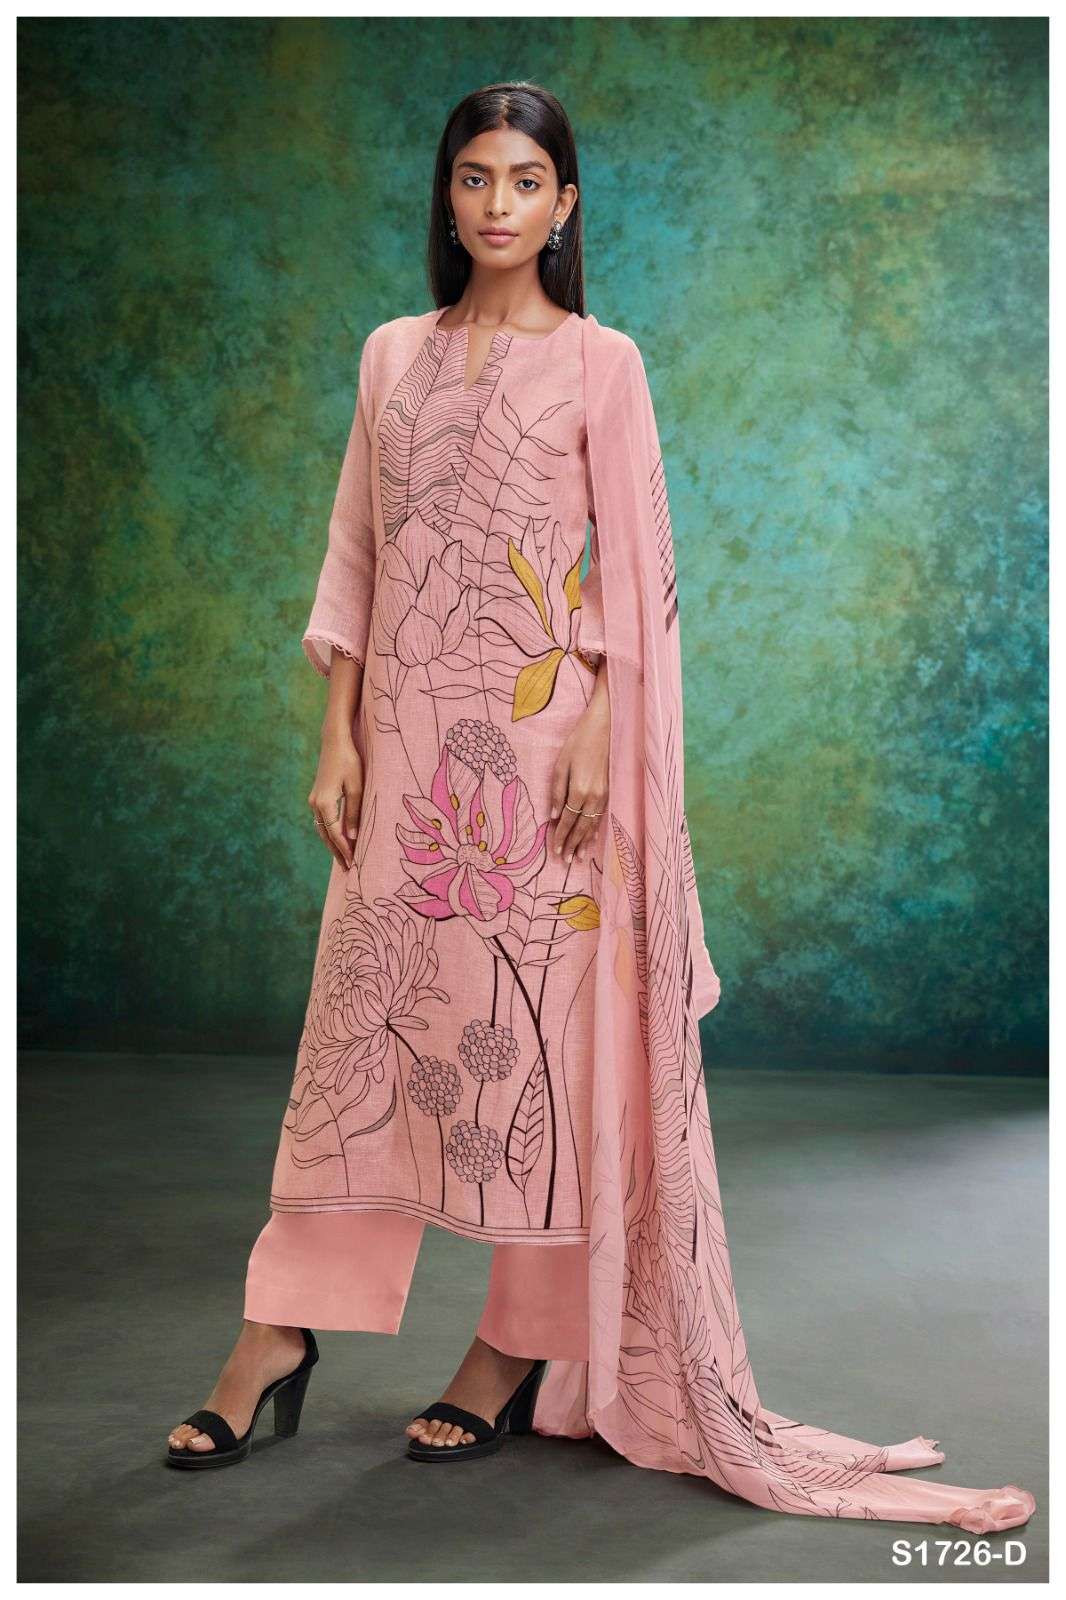 ganga hina 1726 series stylish designer salwar kameez catalogue wholesaler surat 